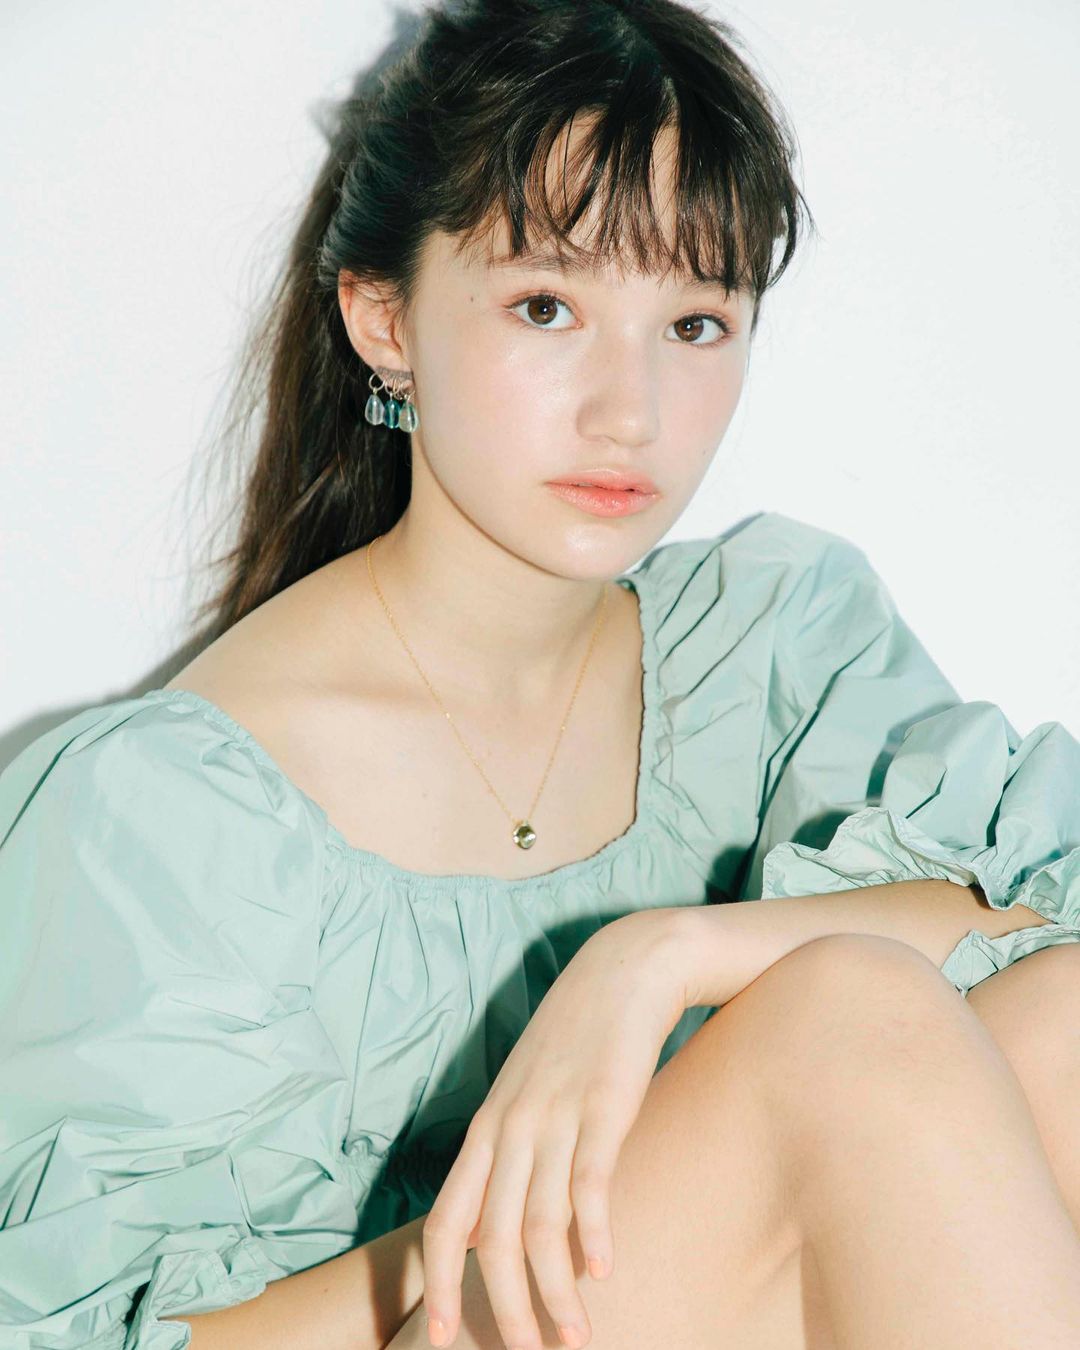 日本仙气少女登时尚杂志,混血脸孔受瞩目,网友发现竟只有11岁